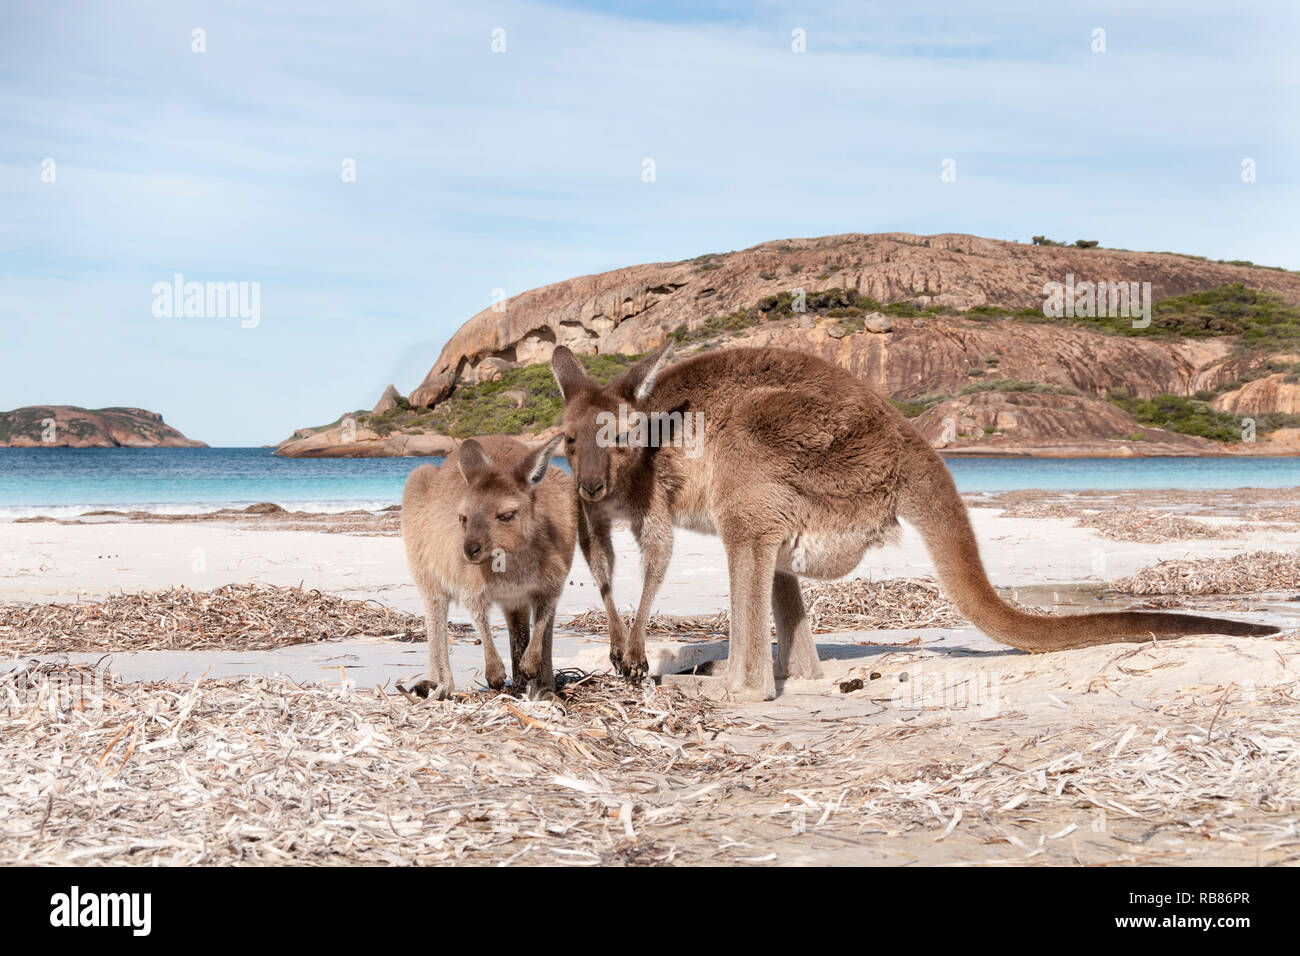 Wild kangaroo on the beach in Australia Stock Photo